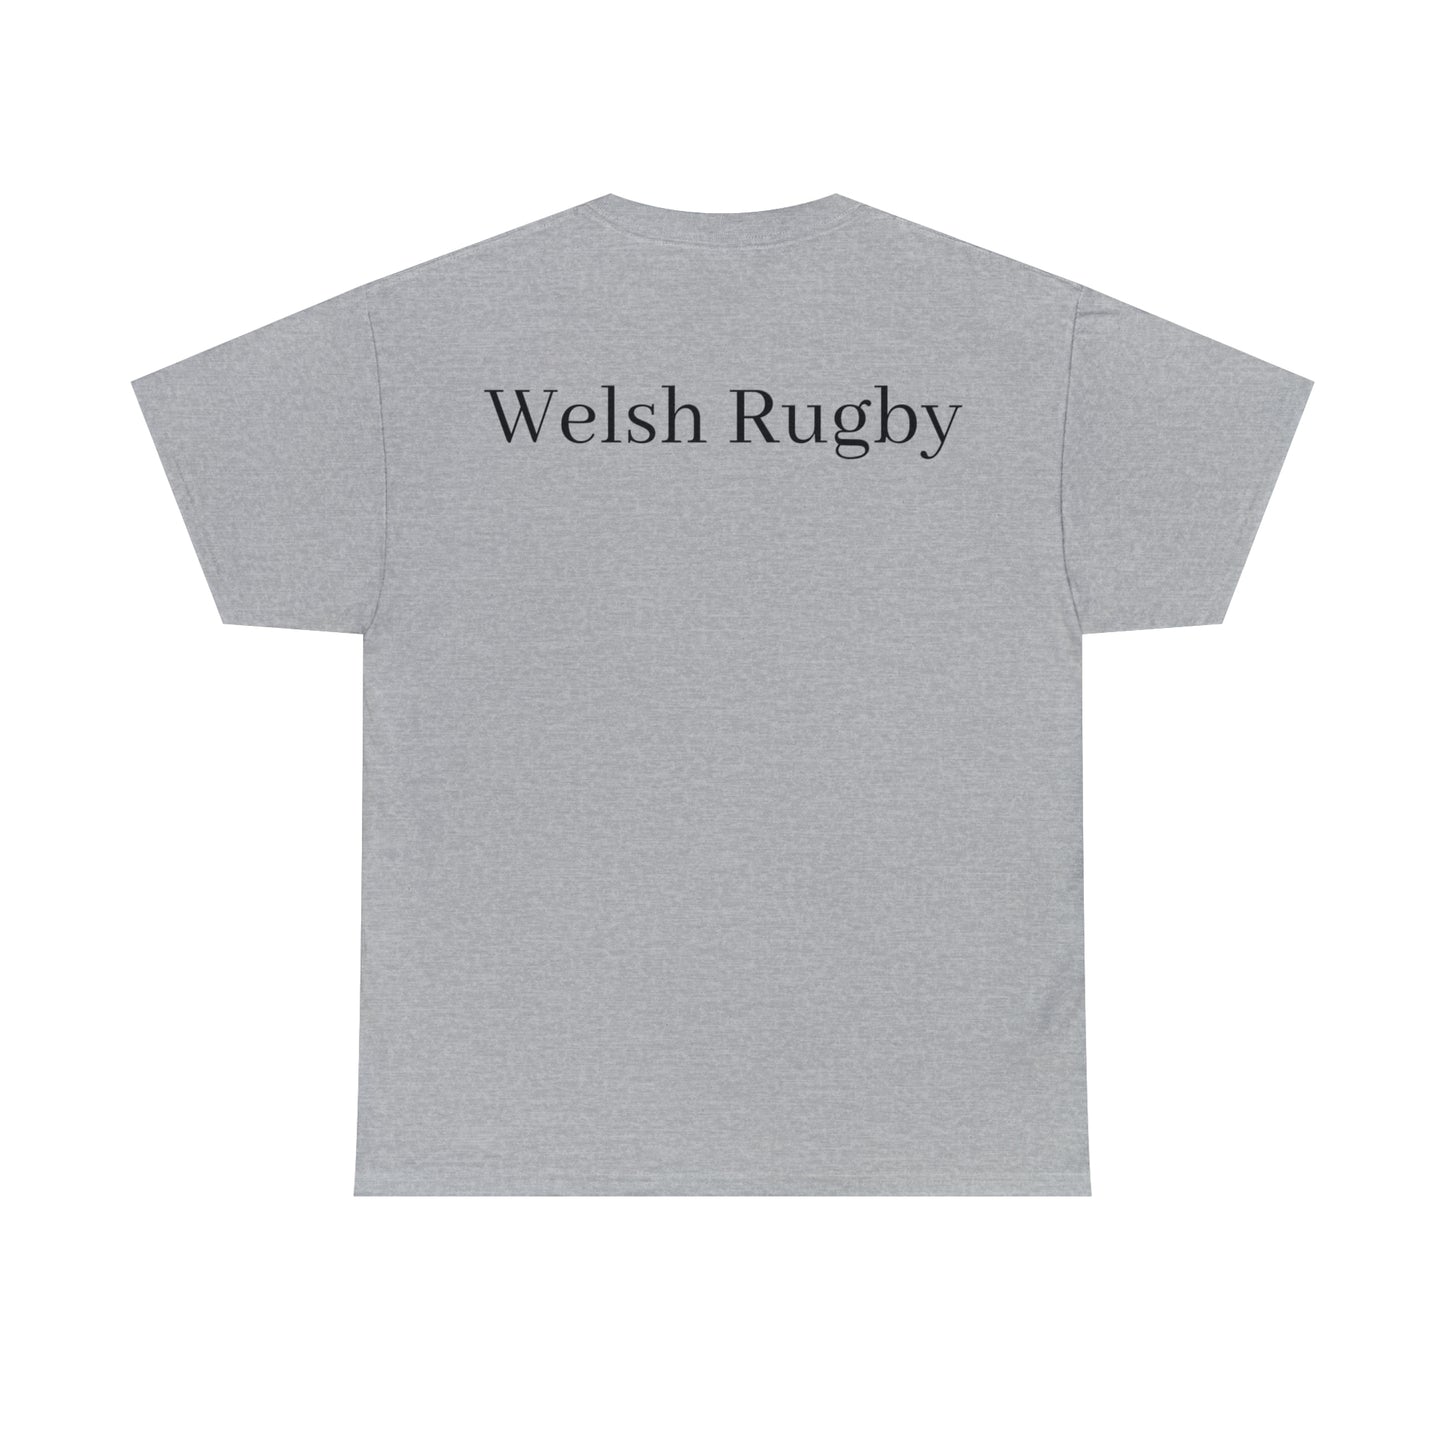 Post Match Wales - light shirts